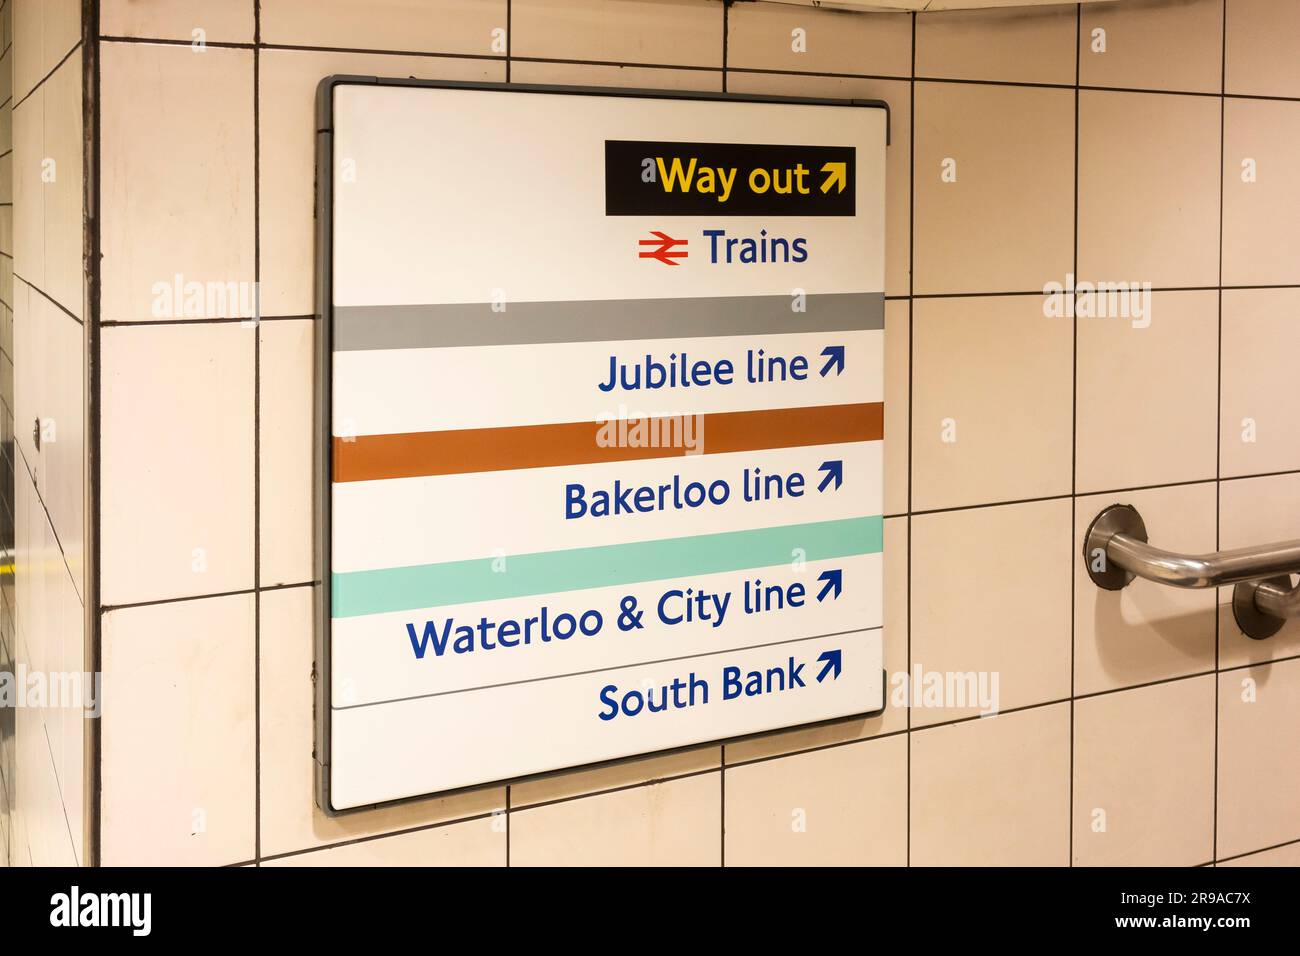 Wegbeschreibungen an der Londoner U-Bahn-Station, die den Weg nach draußen zeigt, Jubilee Line, Bakerloo Line, Waterloo und City Line und South Bank Tube Line. UK Stockfoto